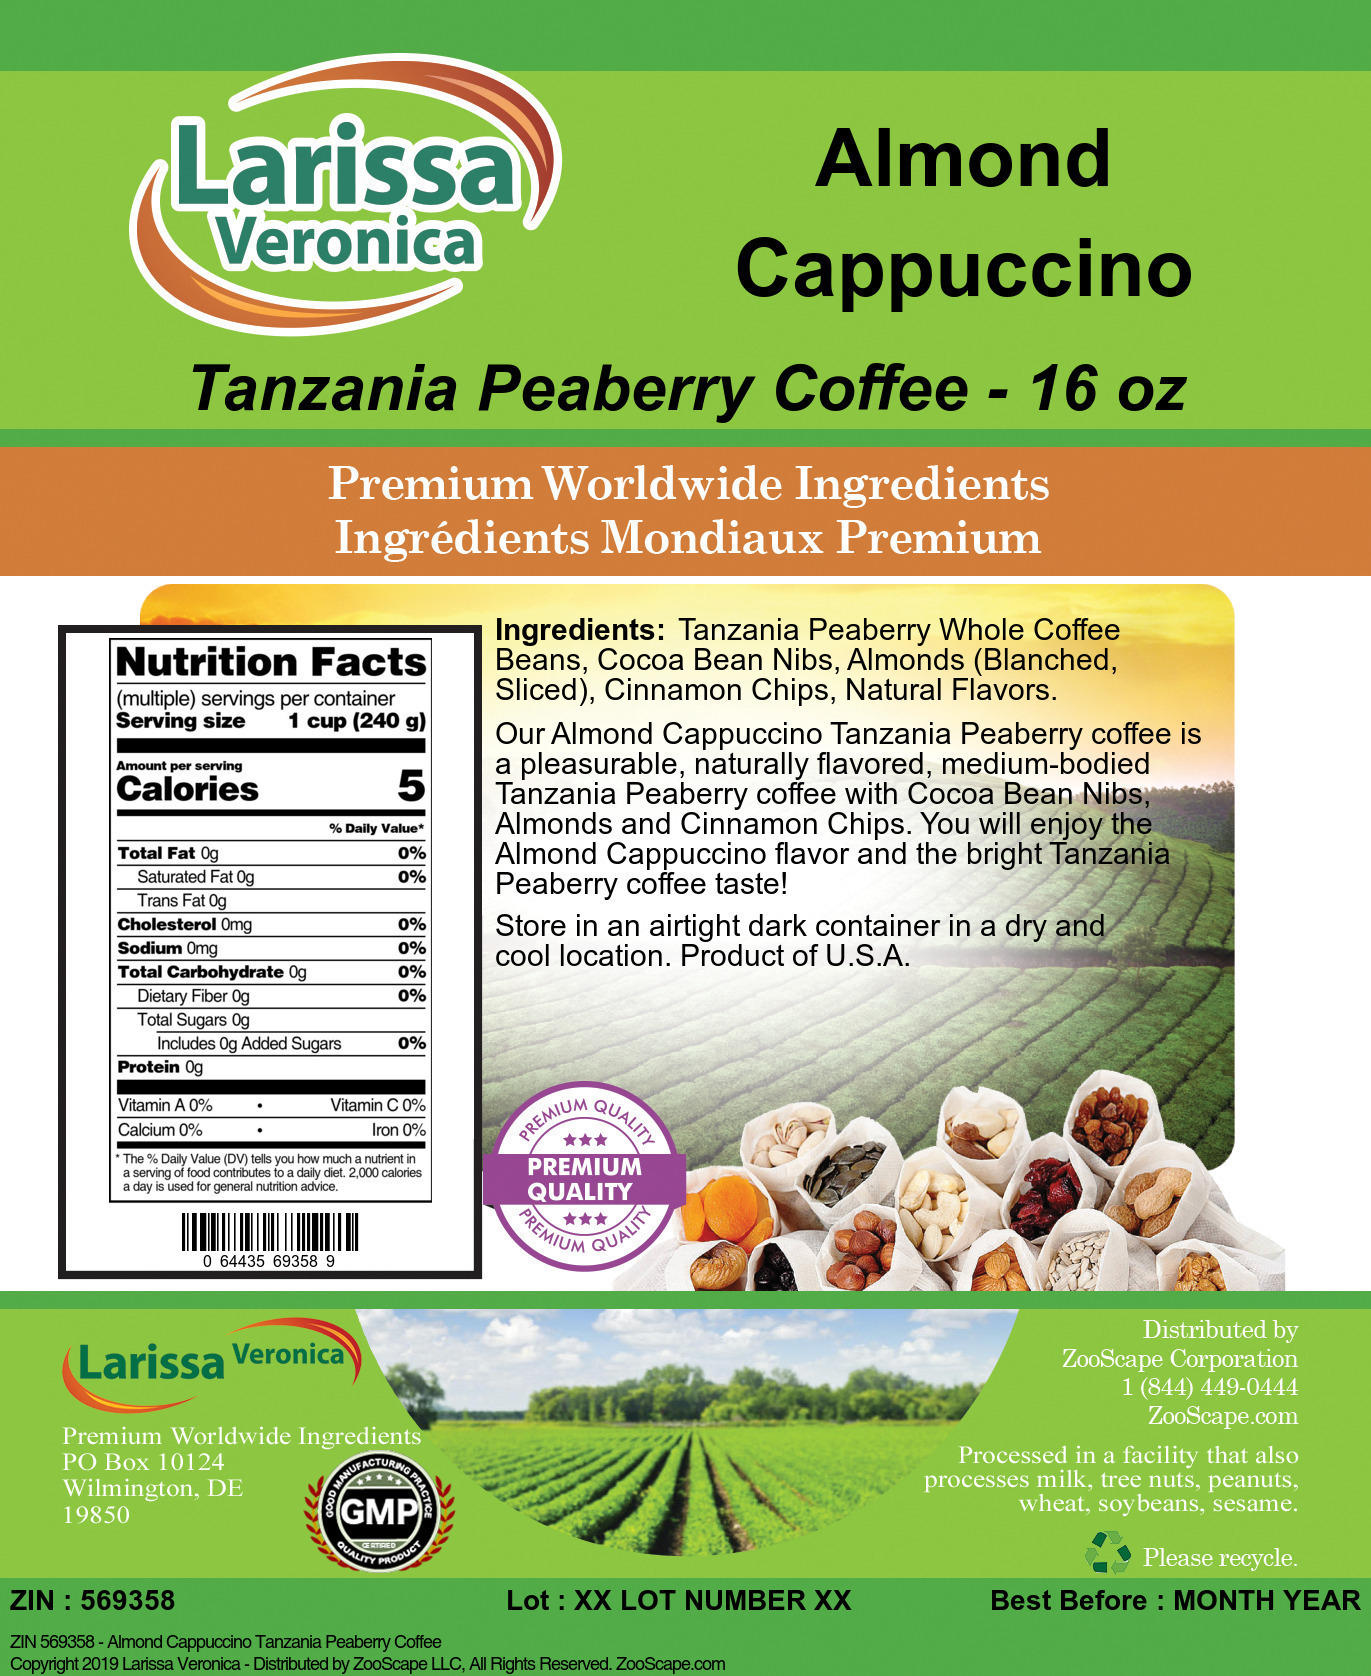 Almond Cappuccino Tanzania Peaberry Coffee - Label